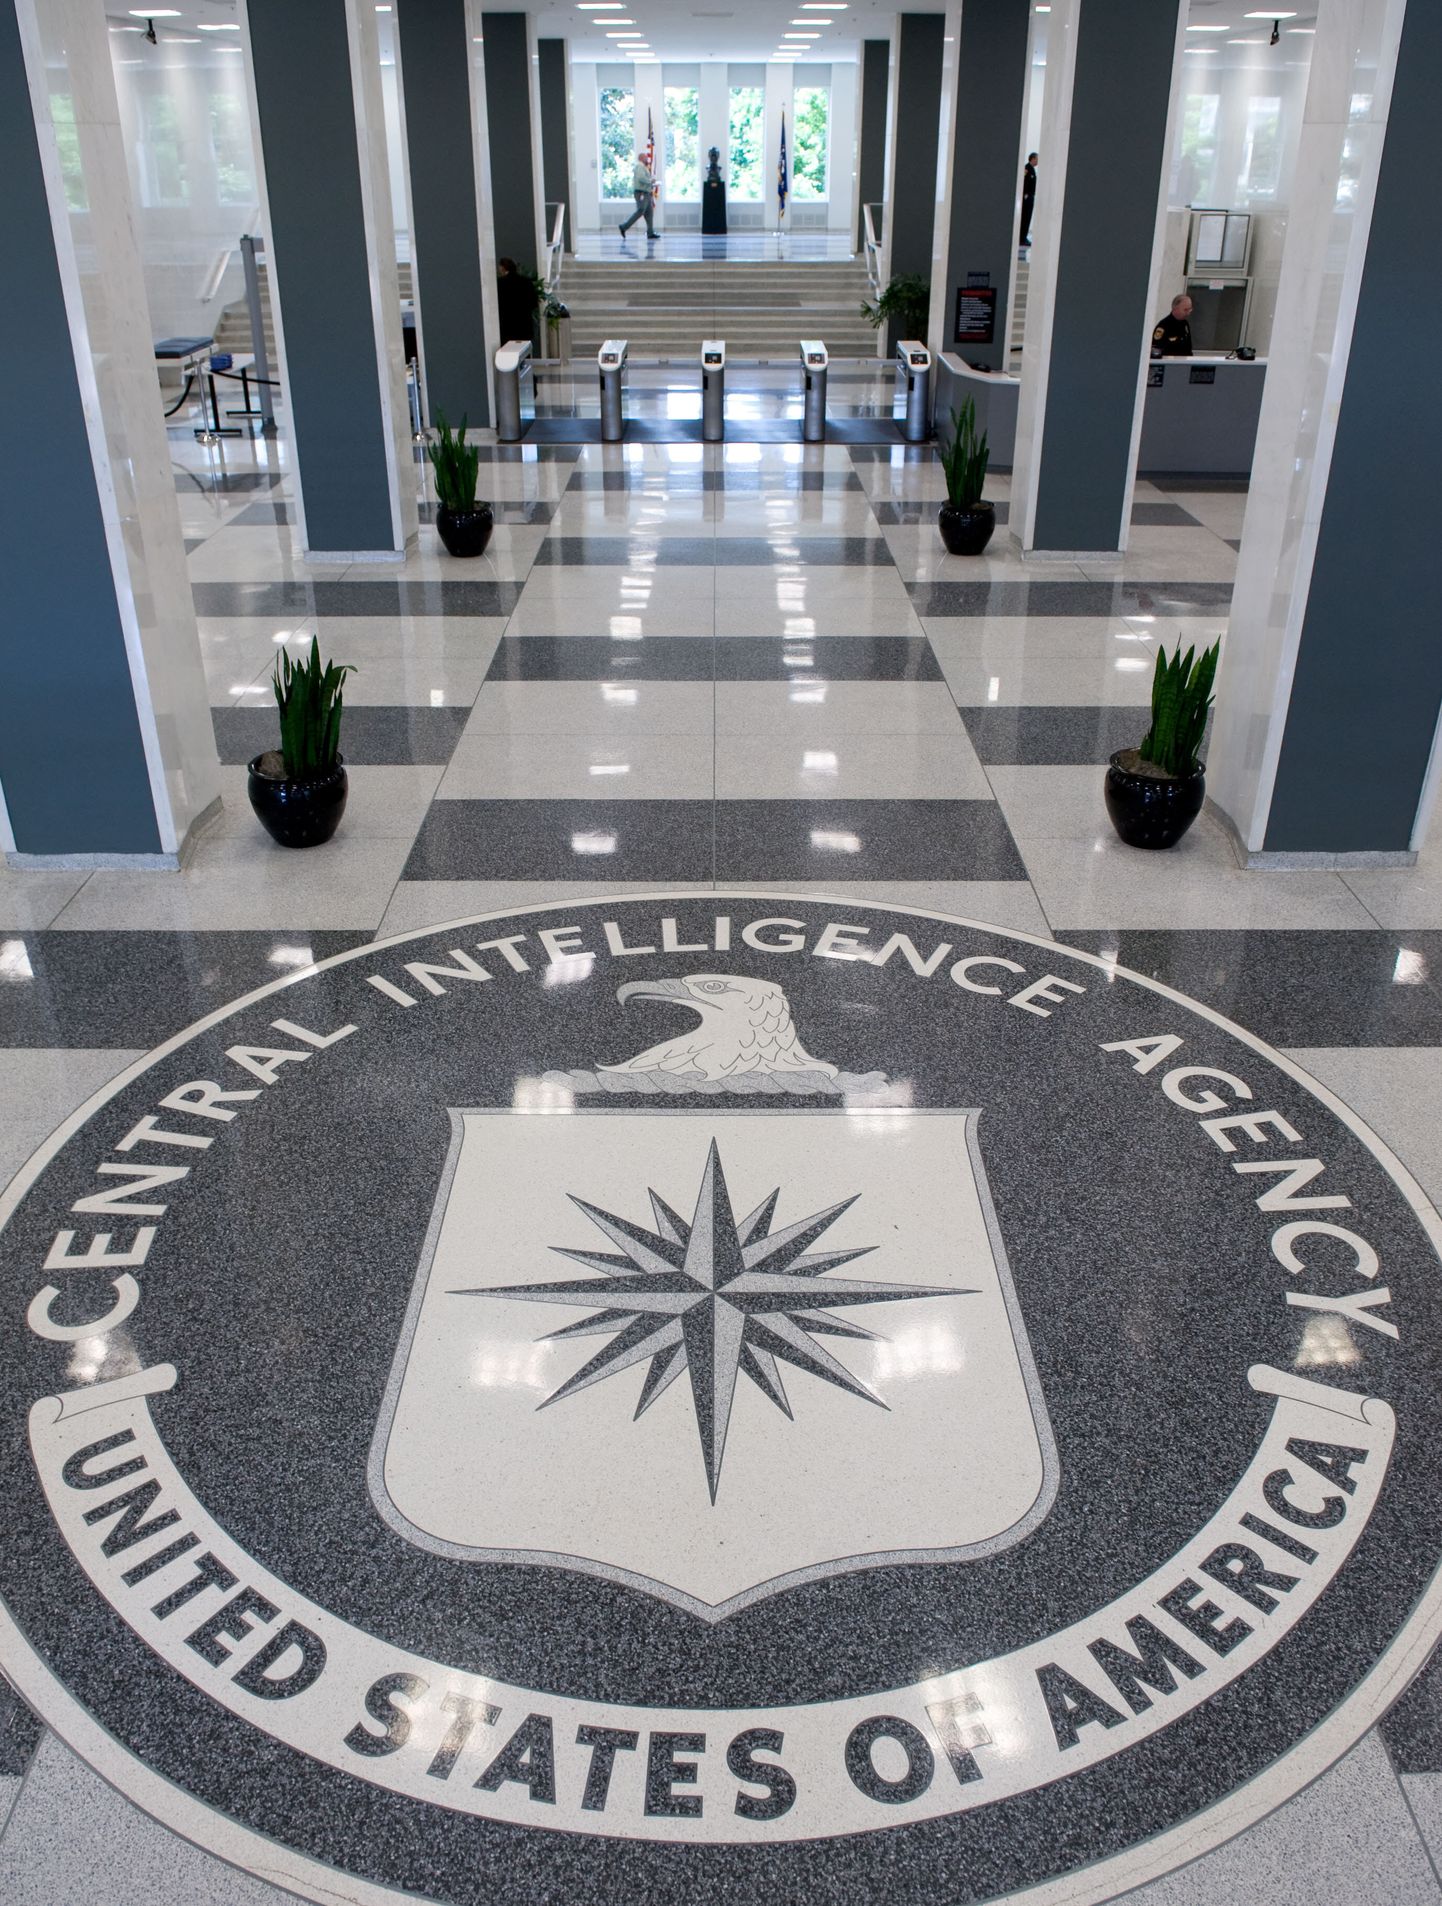 USA Luure Keskagentuuri (CIA) logo organisatsiooni peakorteris.